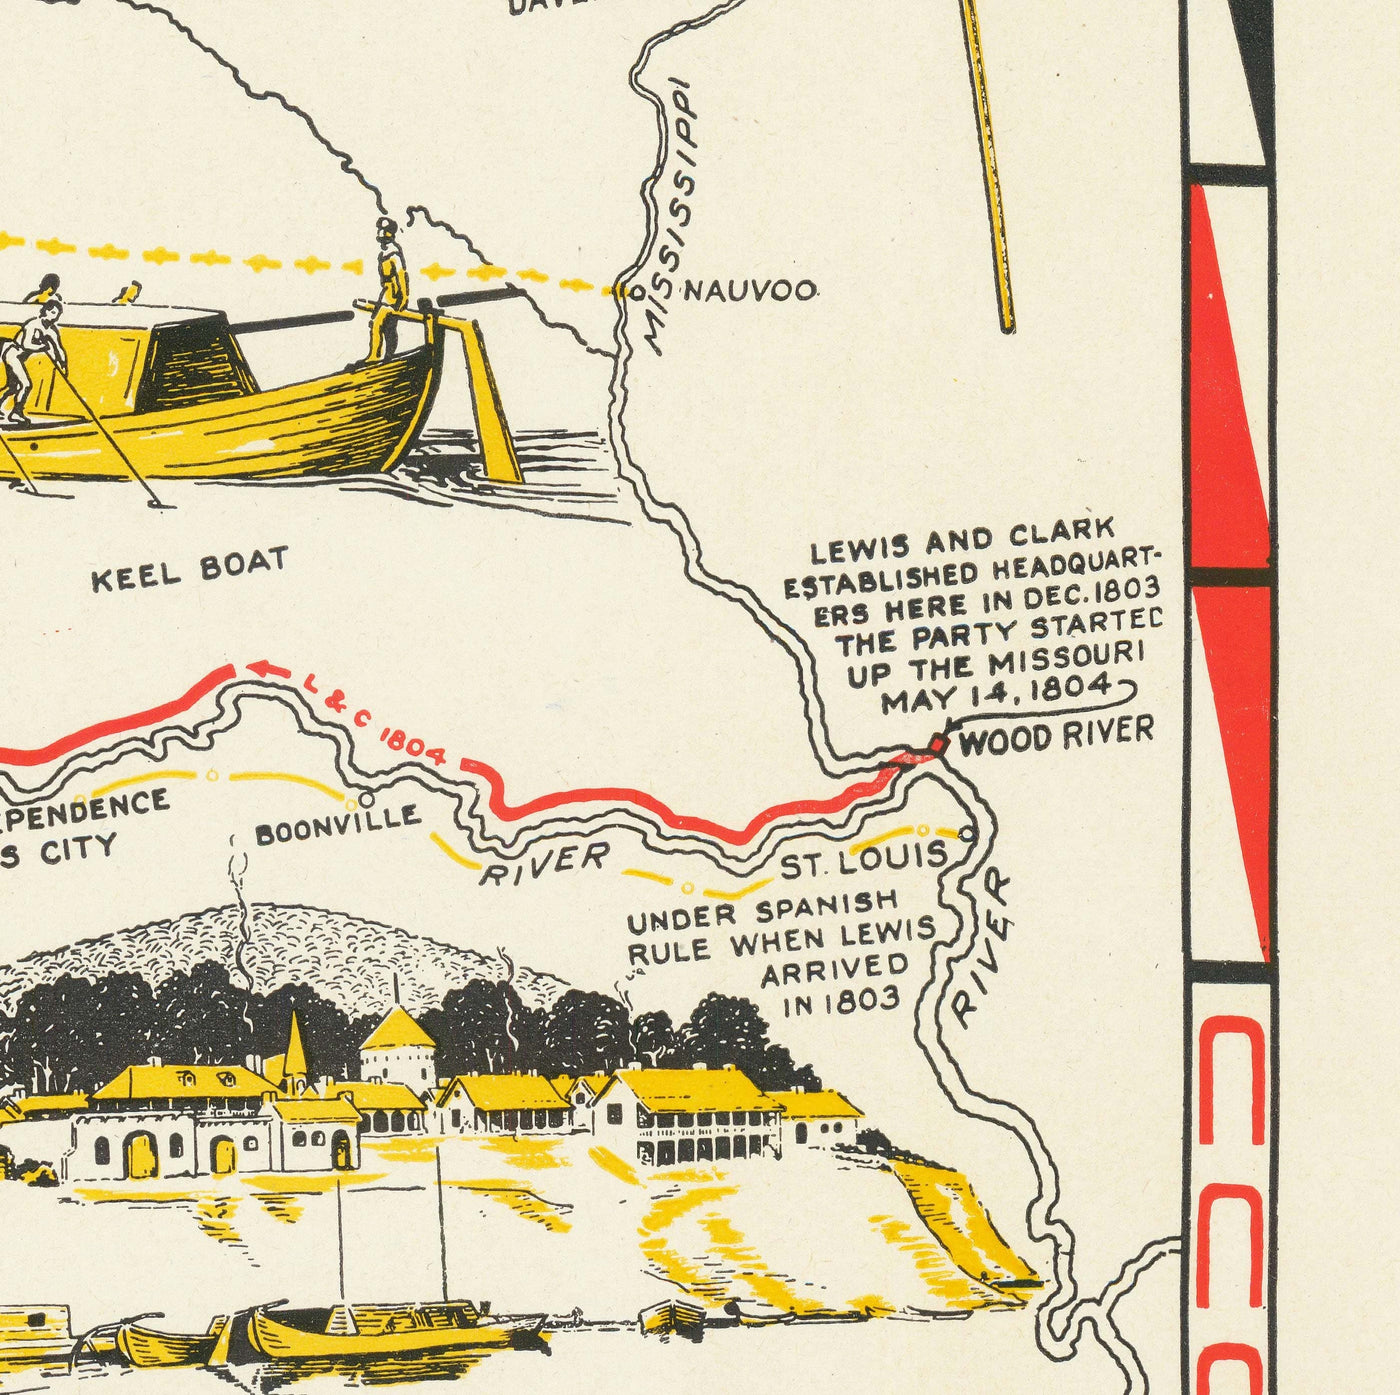 Viejo mapa de Lewis & Clark Expedition - Cuerpo de Descubrimiento, Oregon Trail, Mormones, Pony Express, Luisiana Compra